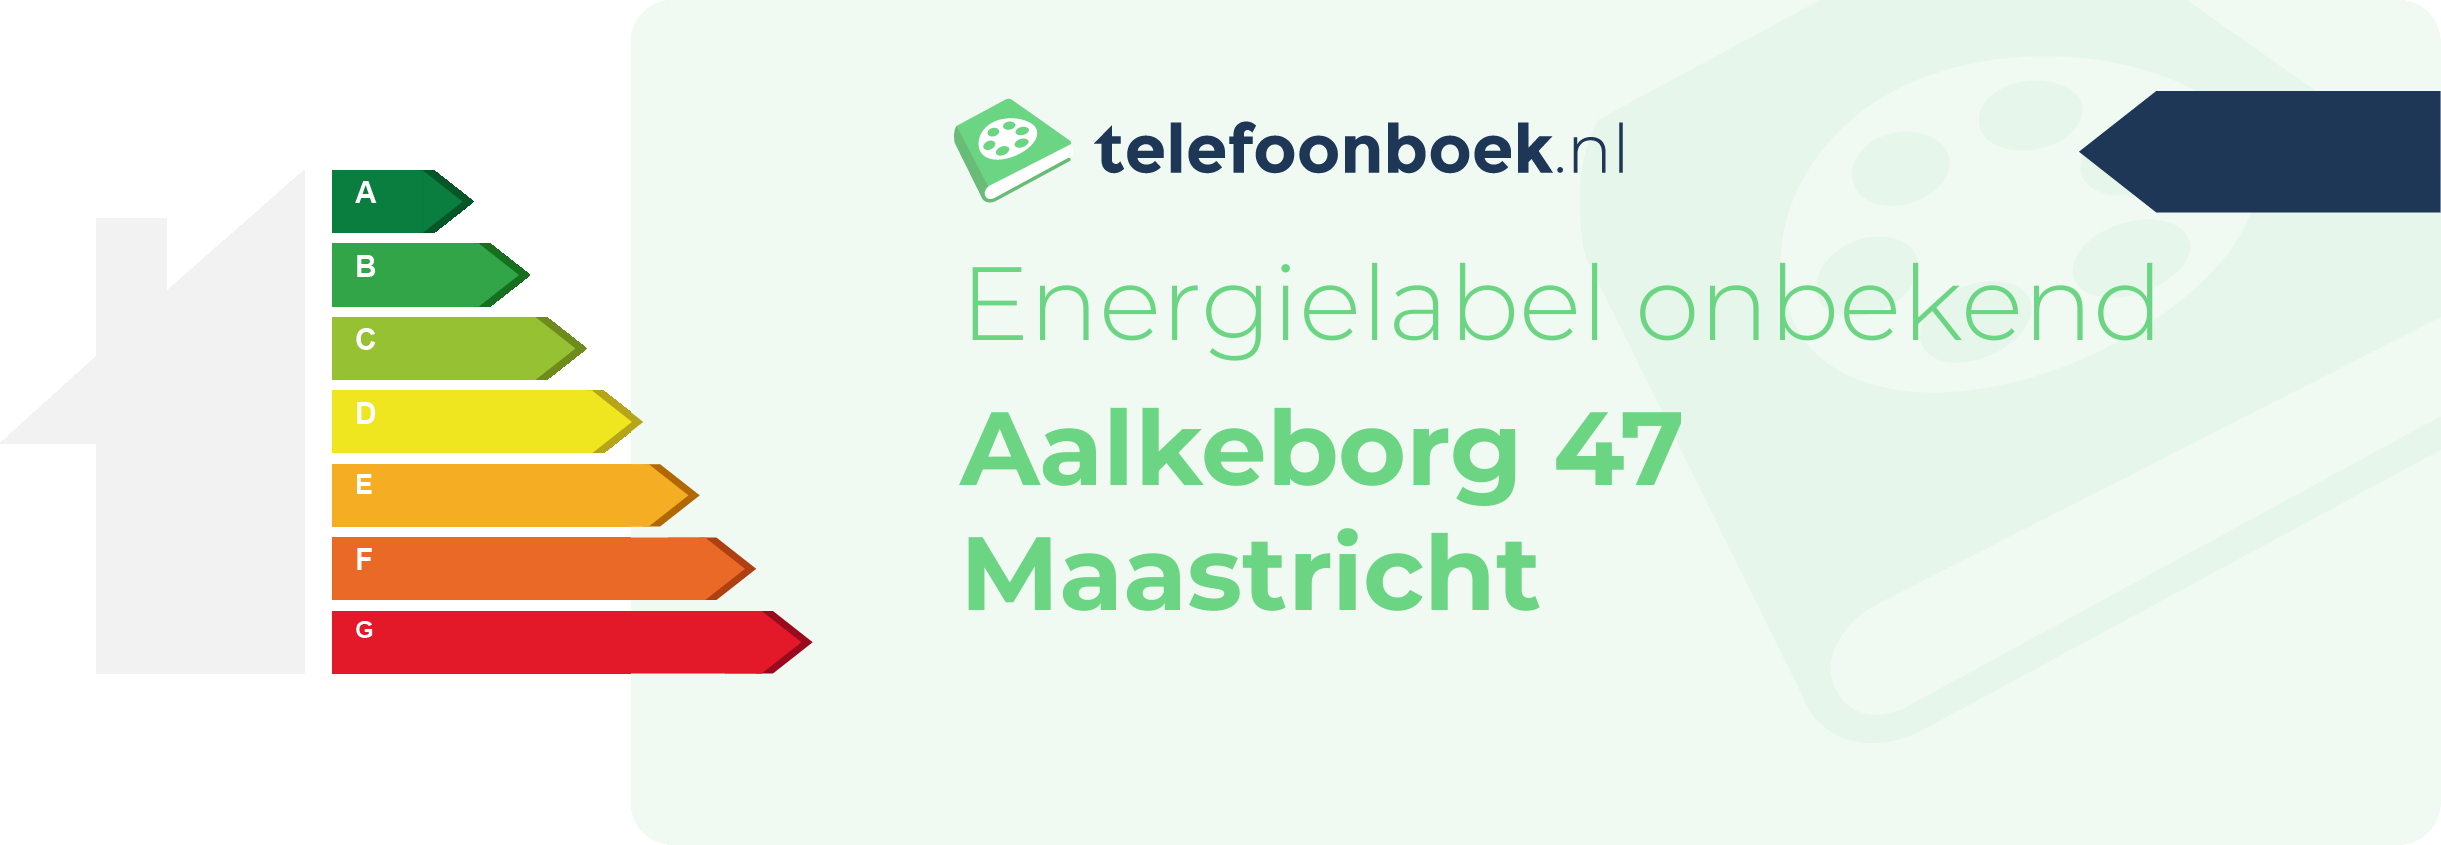 Energielabel Aalkeborg 47 Maastricht